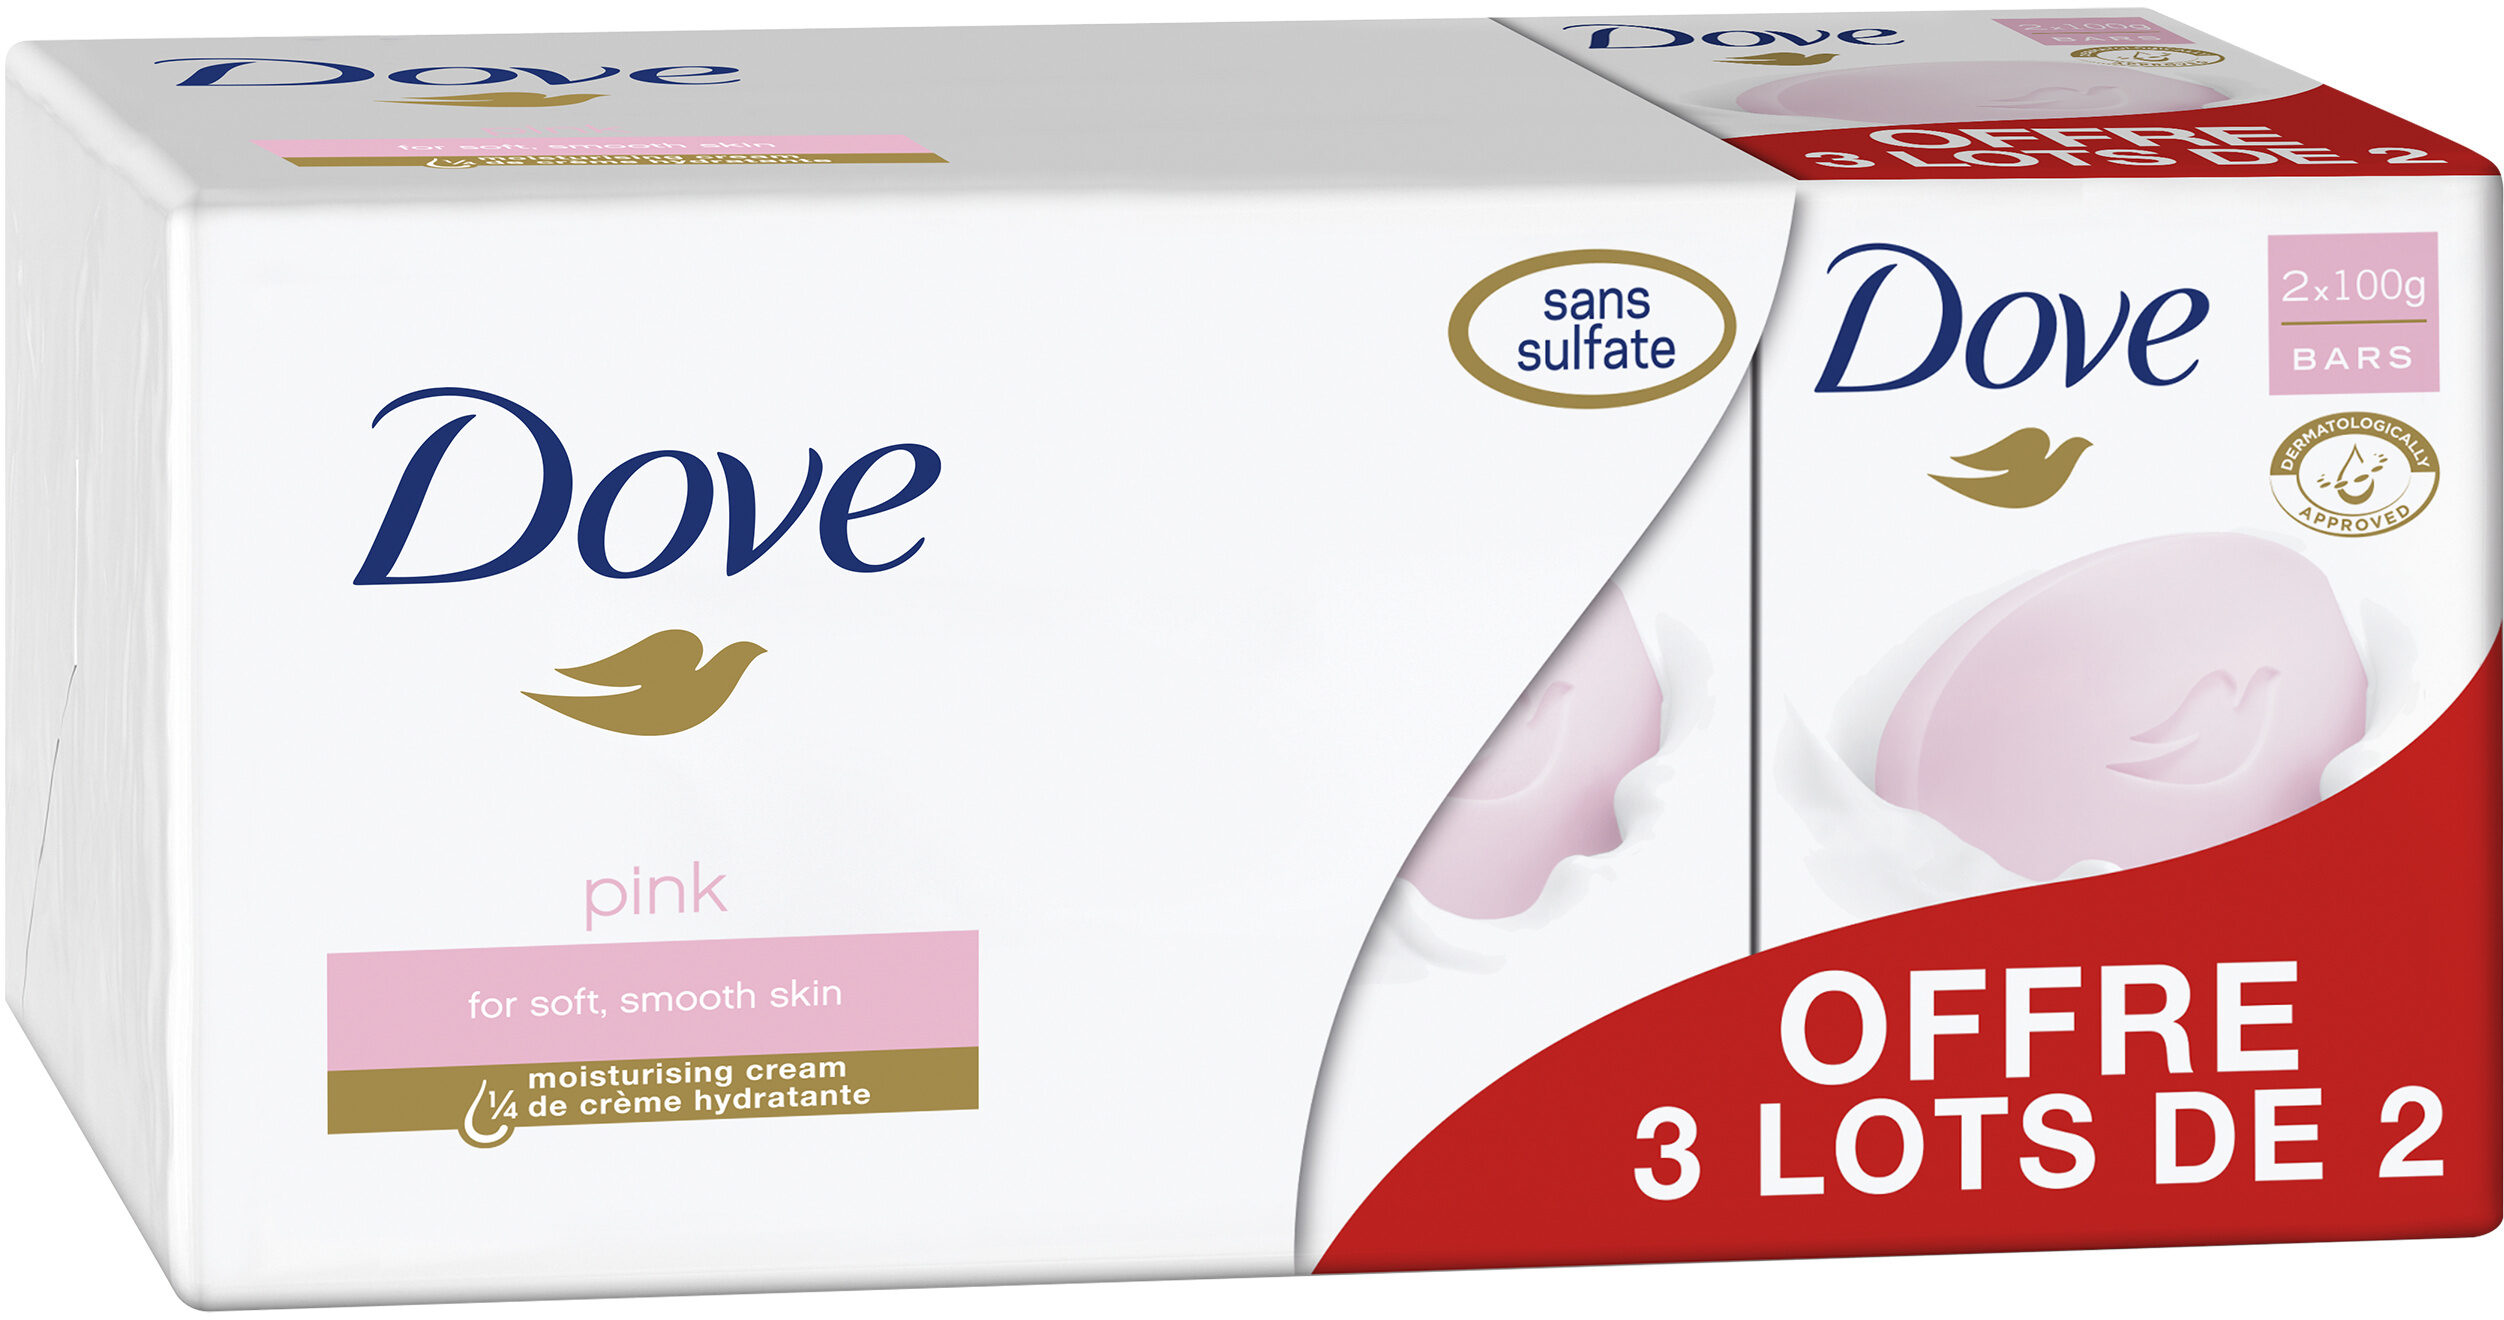 Dove Savon Pain de Toilette Pink Lot 2x100g - Produkt - fr